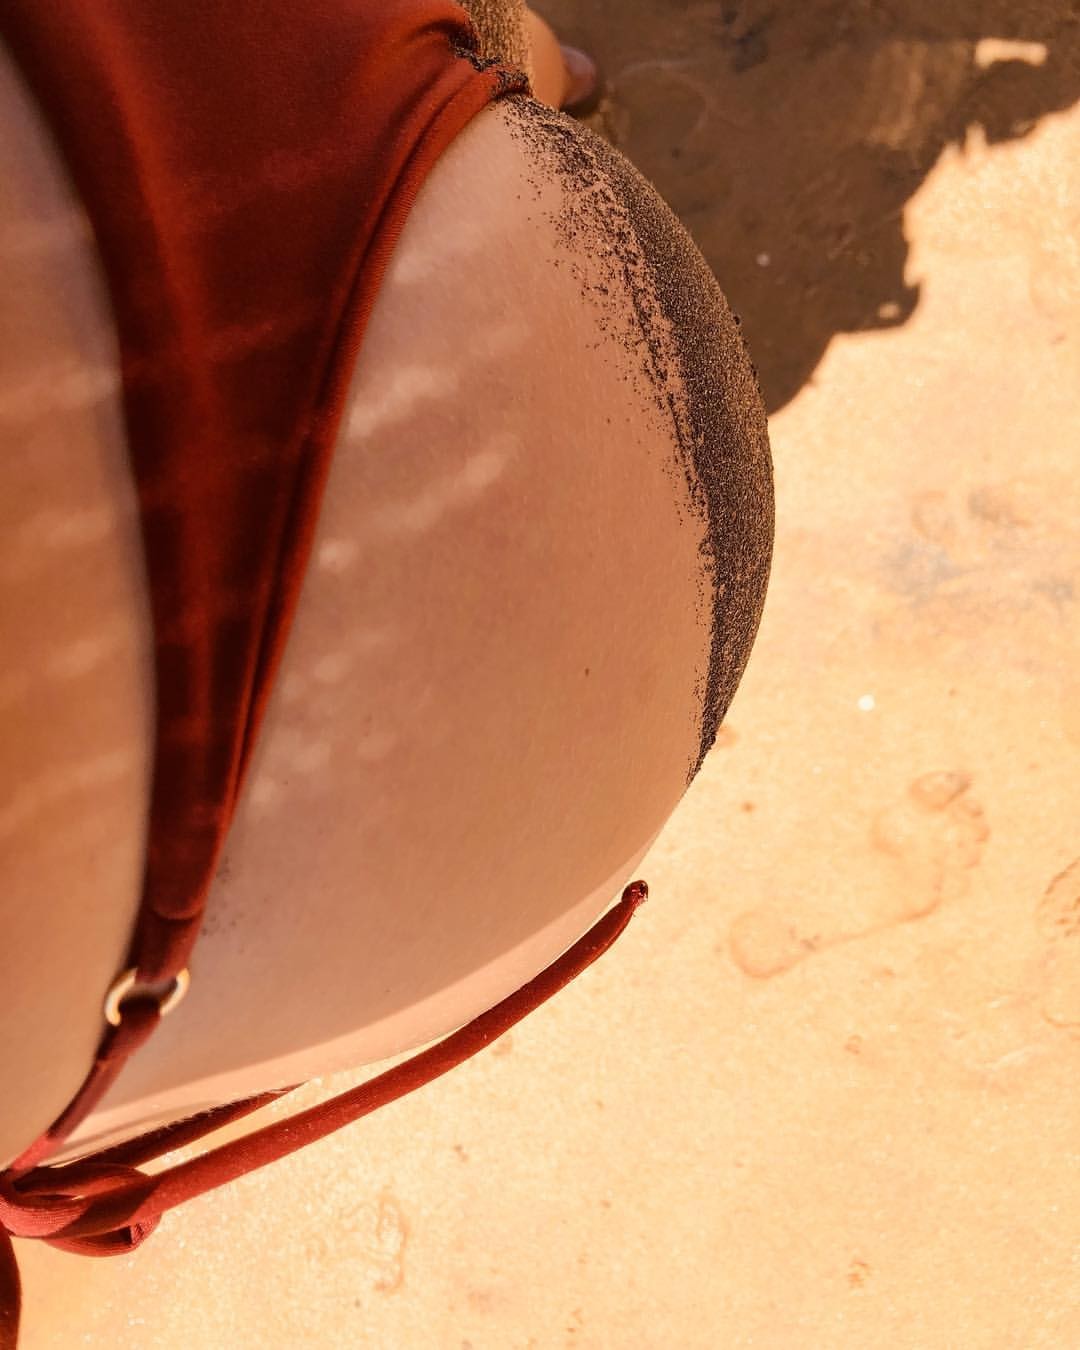 Agatha Moreira suja bumbum de areia (Foto: Reprodução/Instagram)